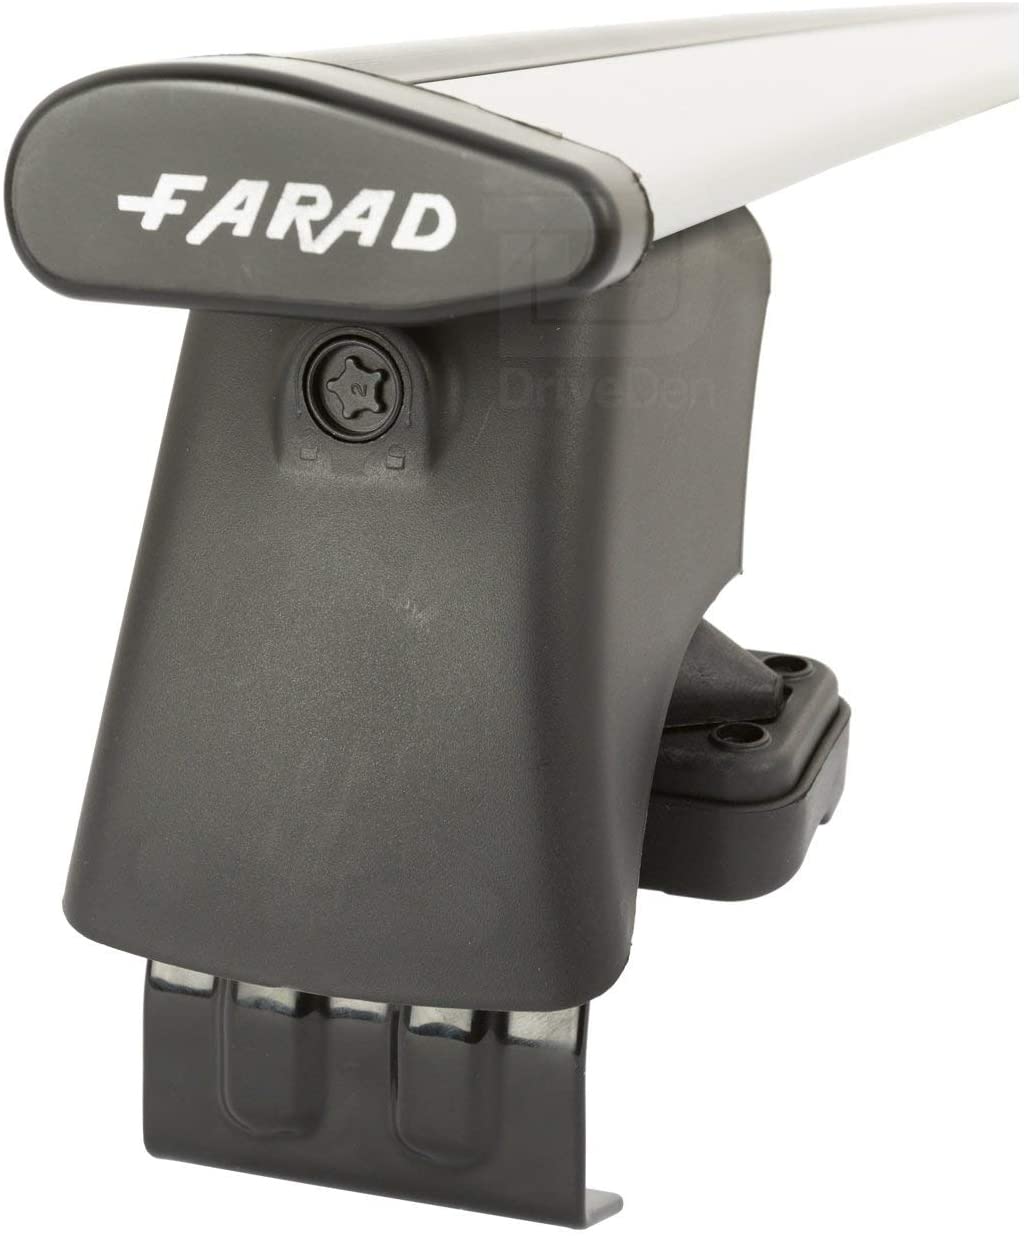 FARAD-Kit H2 per barre portatutto - Nissan Micra 2017> (senza corrimano)